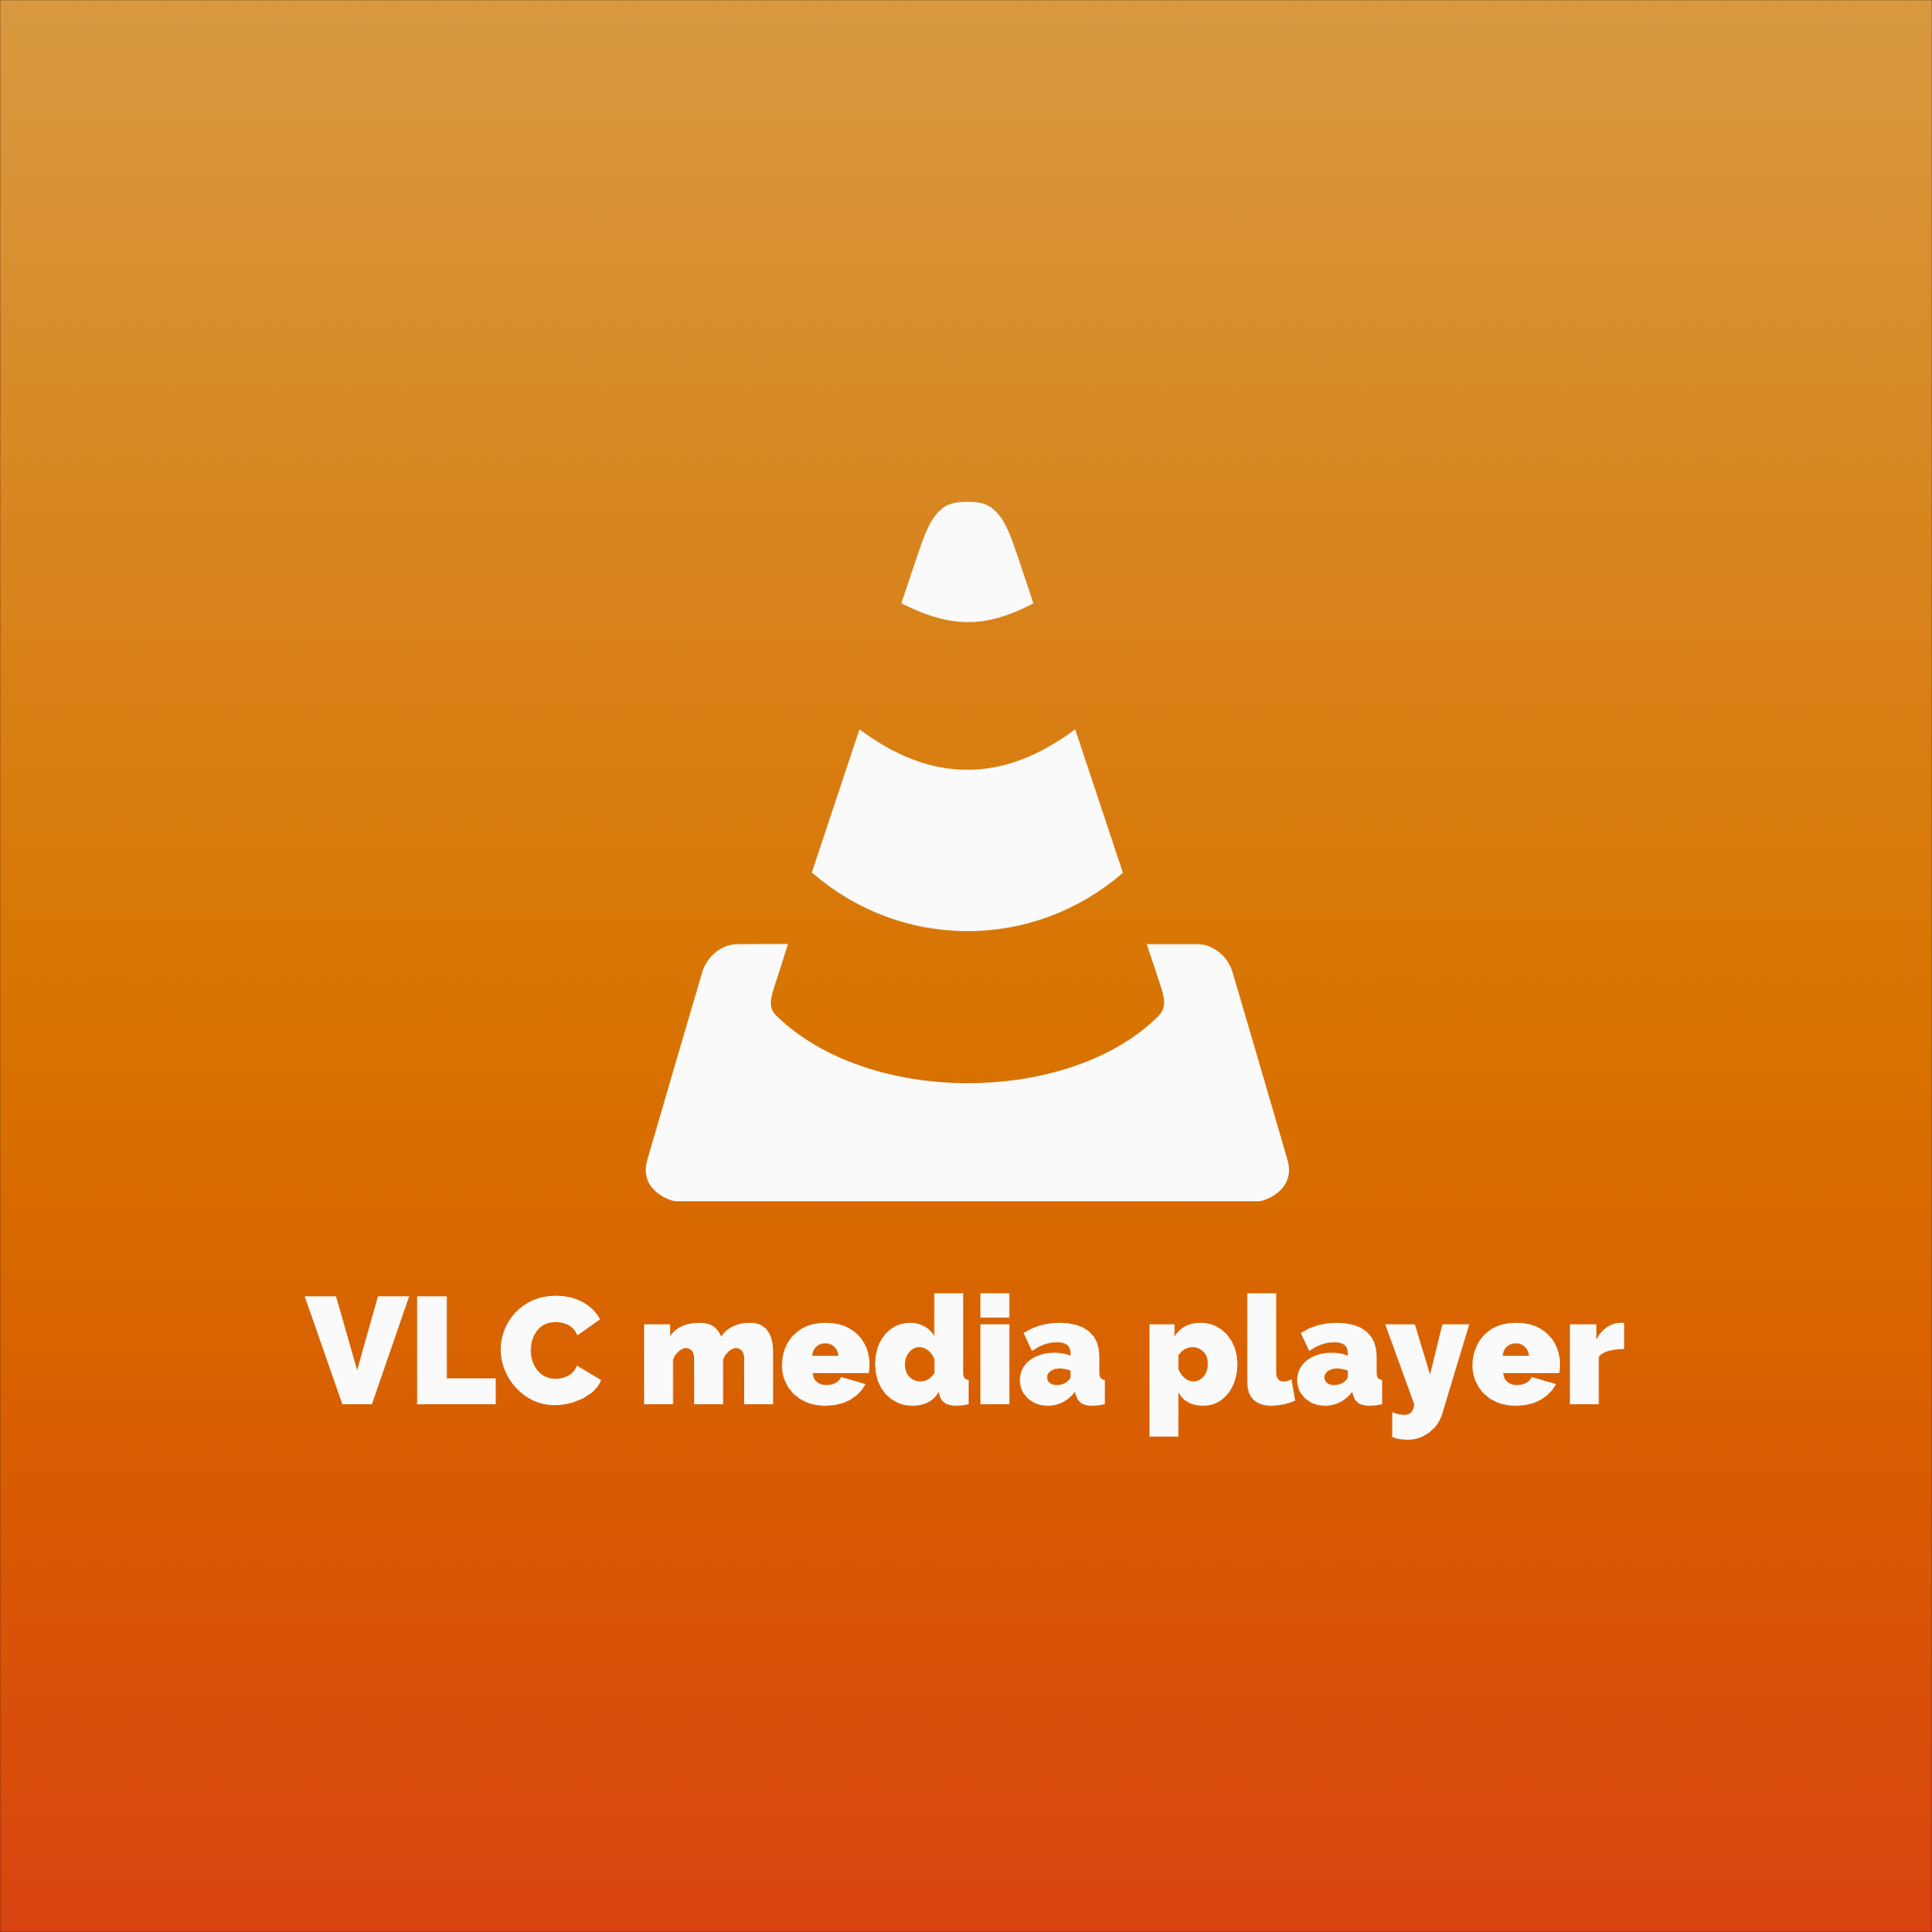 VLC Media Player: Hướng dẫn toàn diện từ A đến Z cho người mới bắt đầu